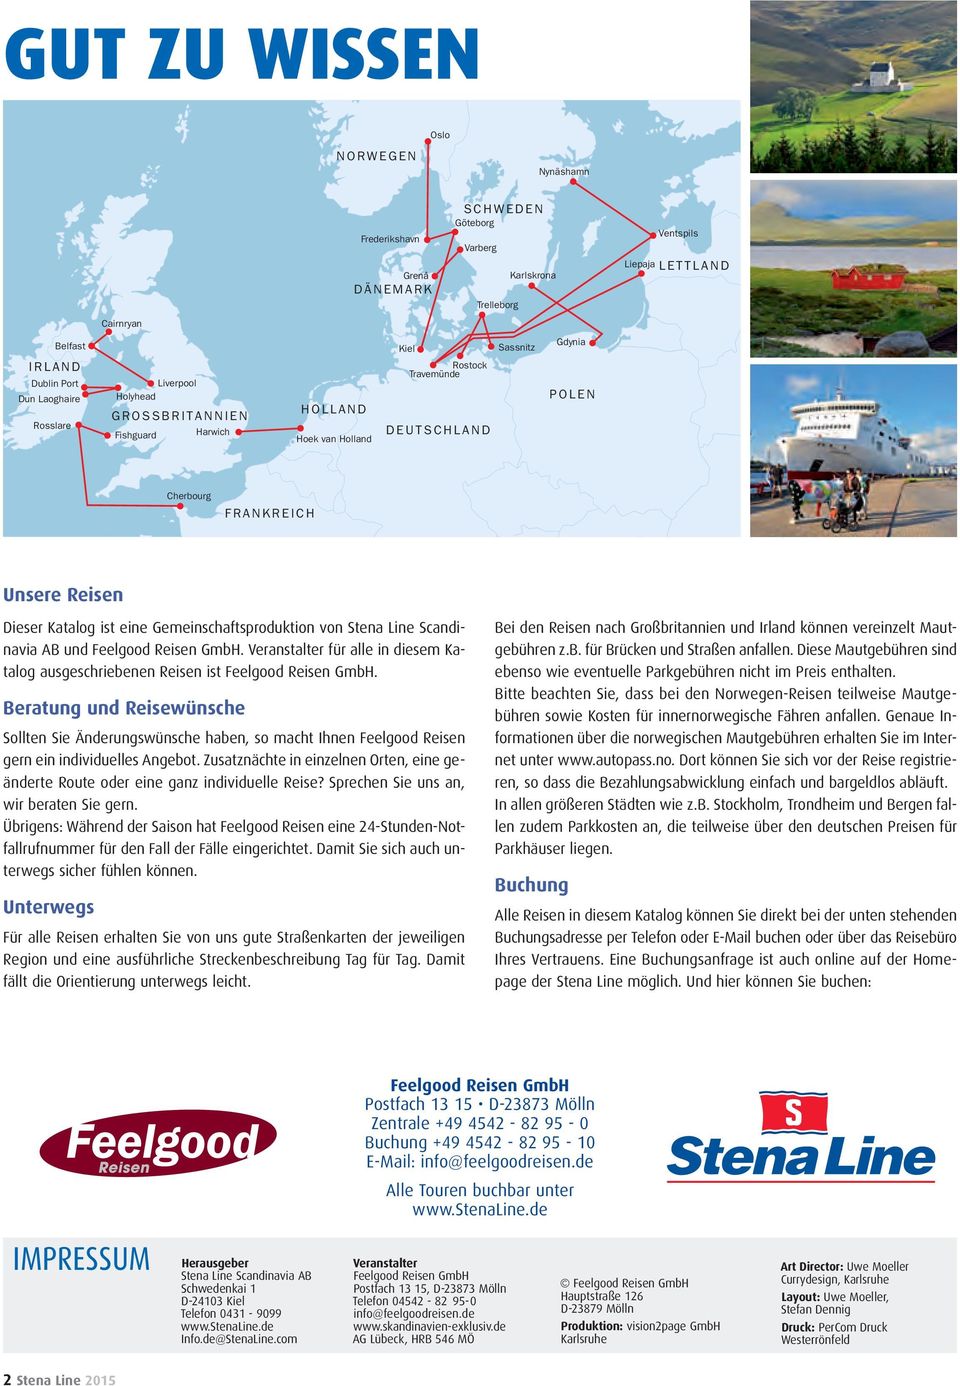 eine Gemeinschaftsproduktion von Stena Line Scandinavia AB und Feelgood Reisen GmbH. Veranstalter für alle in diesem Katalog ausgeschriebenen Reisen ist Feelgood Reisen GmbH.